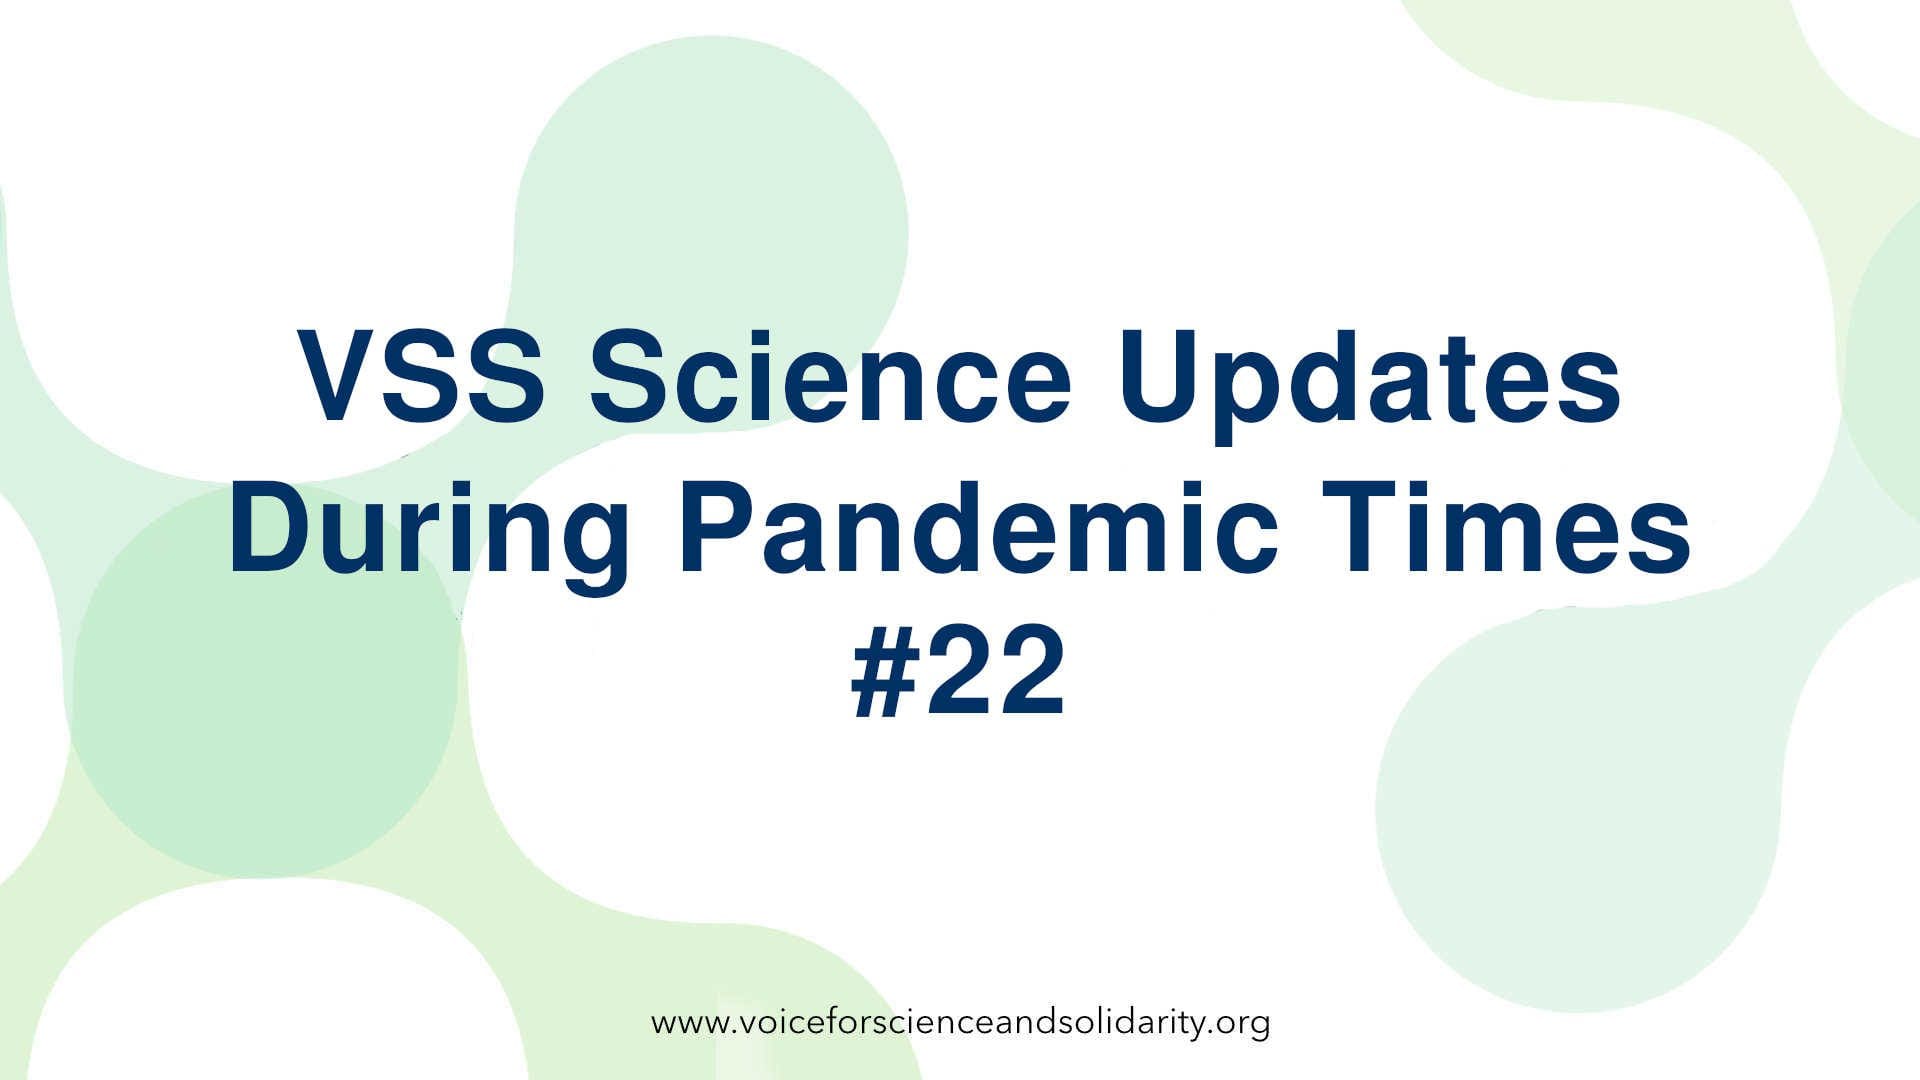 vss-wissenschaftliche-updates-waehrend-der-pandemiezeit-22-voice-for-science-and-solidarity